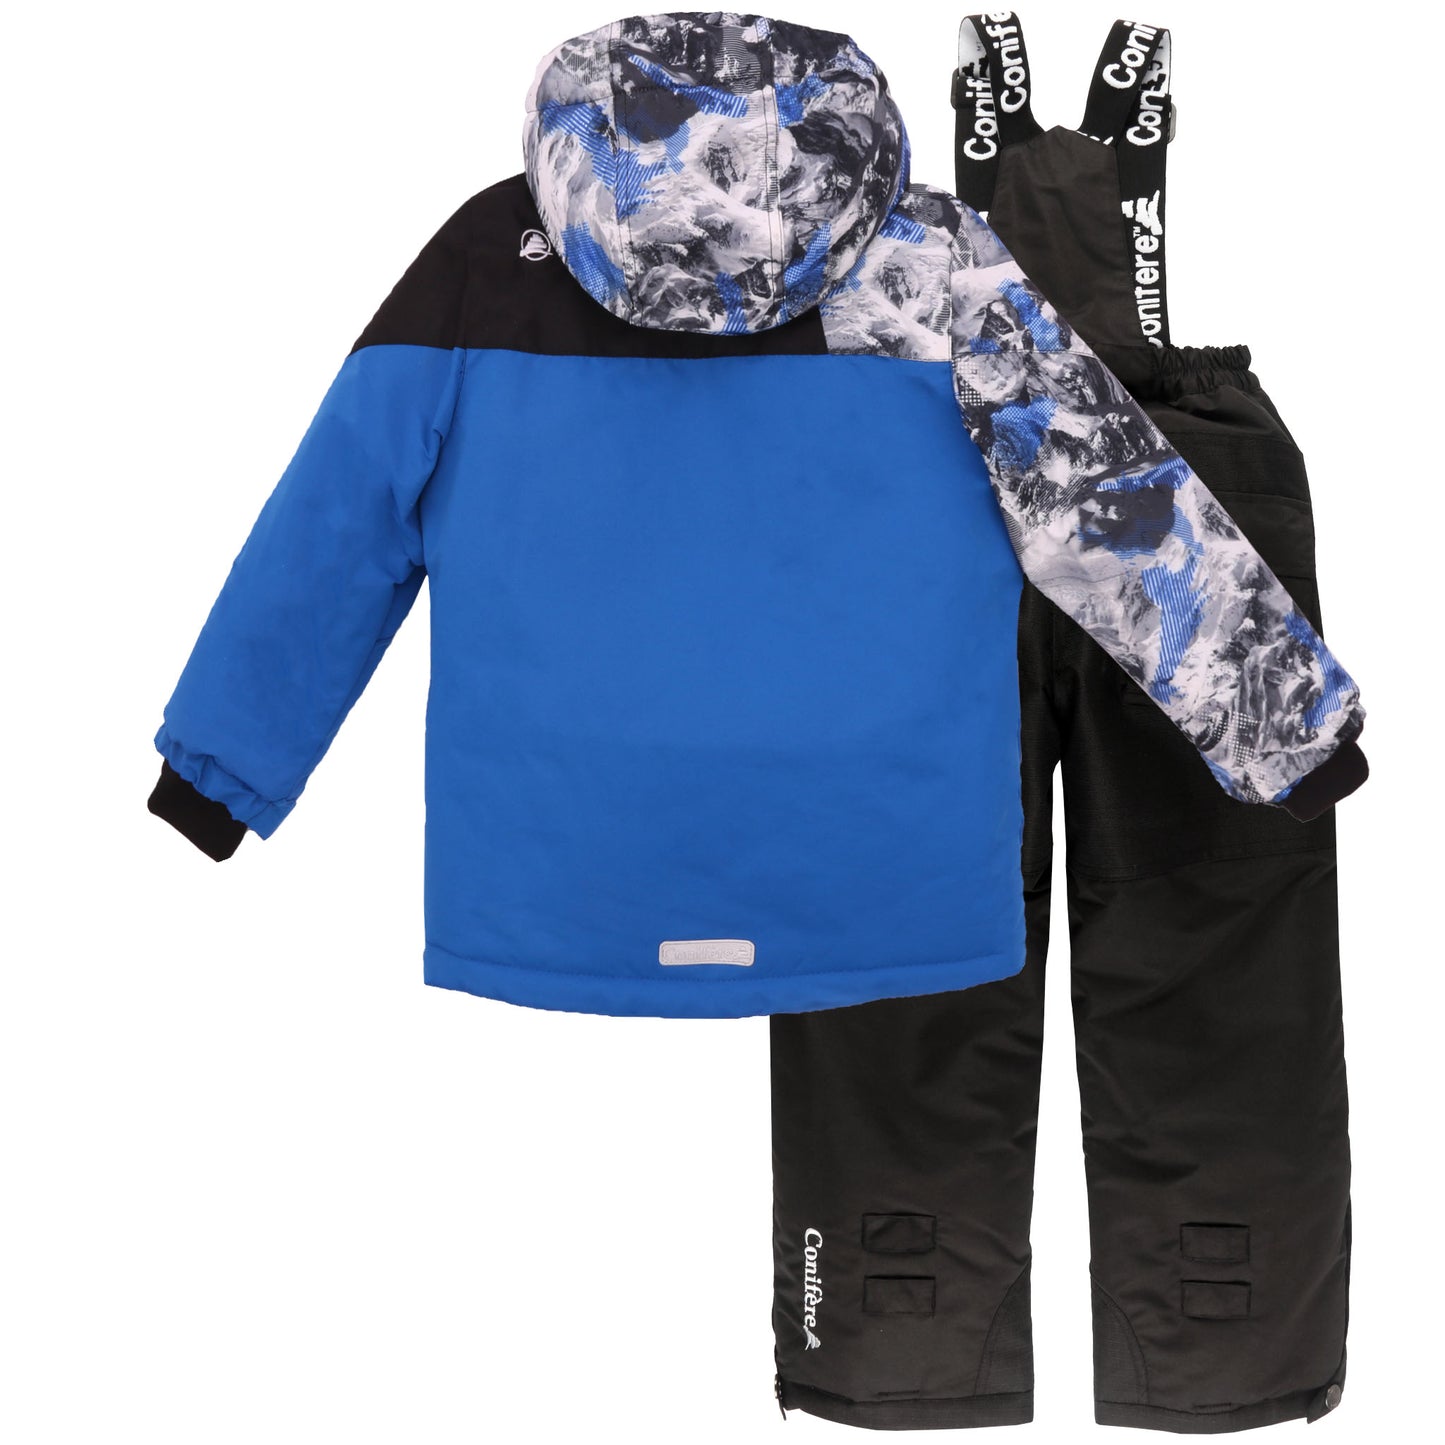 Boy's Blue Snowsuit Set